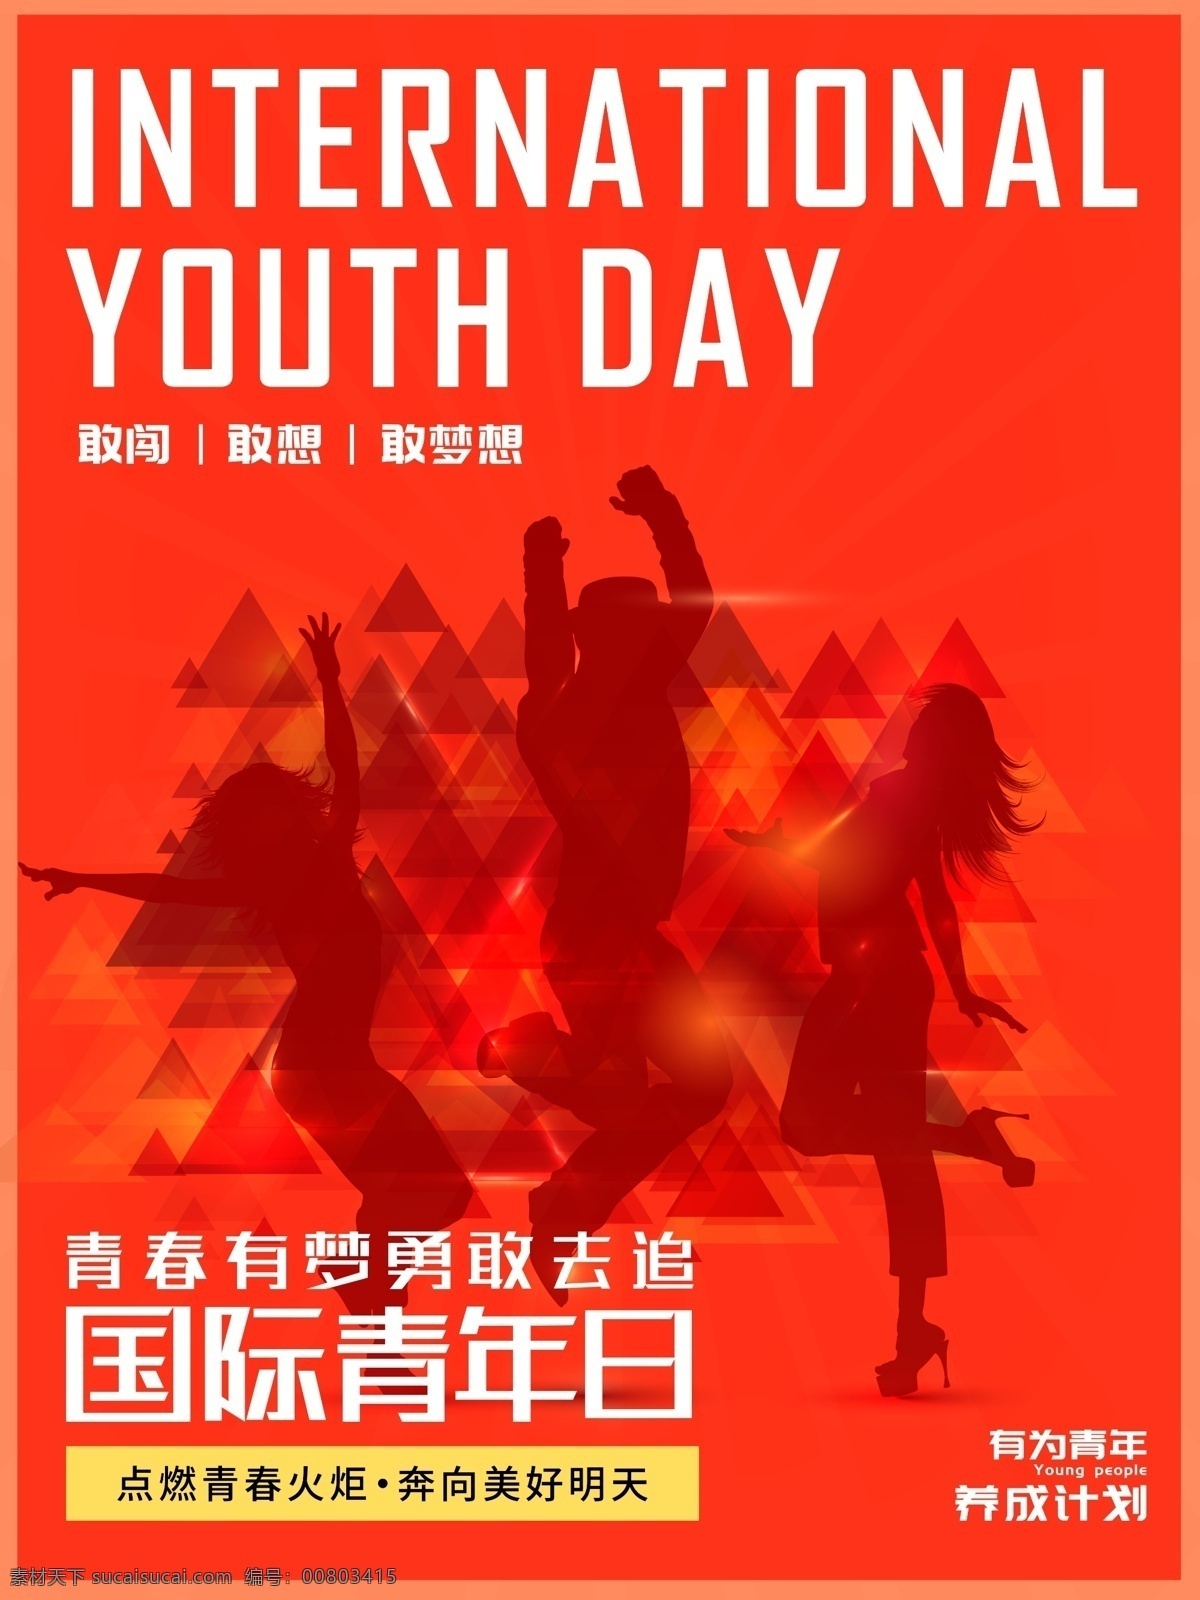 欧美 风 国际 青年 日 国际青年日 青年日 欧美风海报 公益海报 青年日海报 海报 橙色 公益